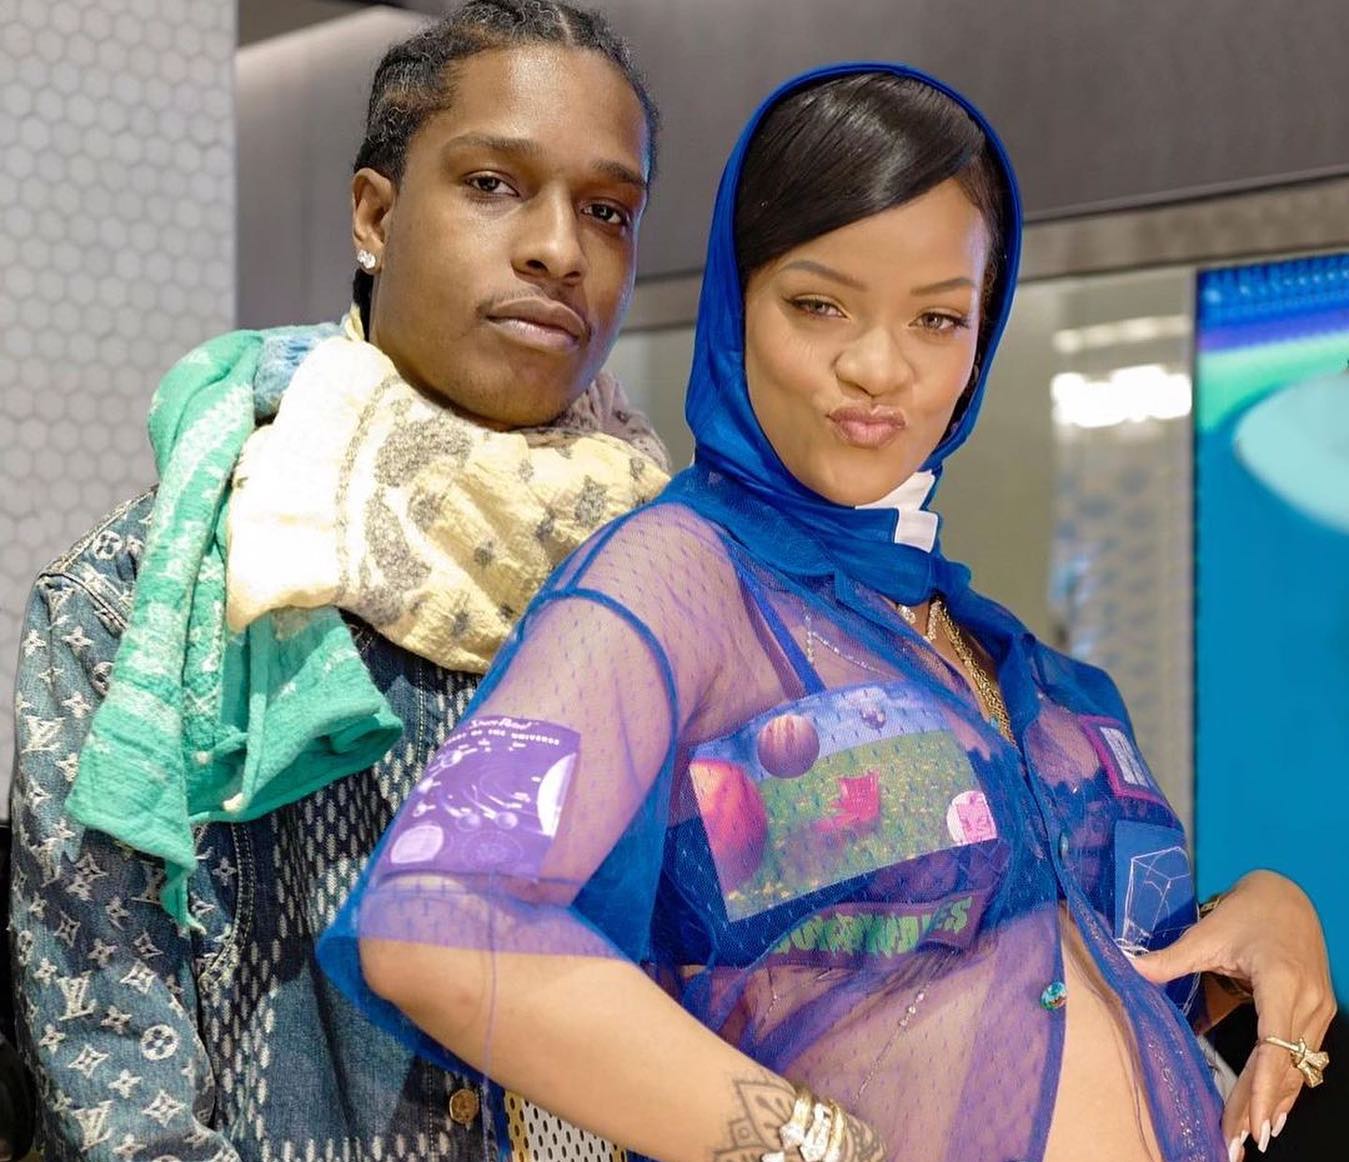 SPOTTED: ASAP Rocky & Rihanna Attend the Superbowl LVI